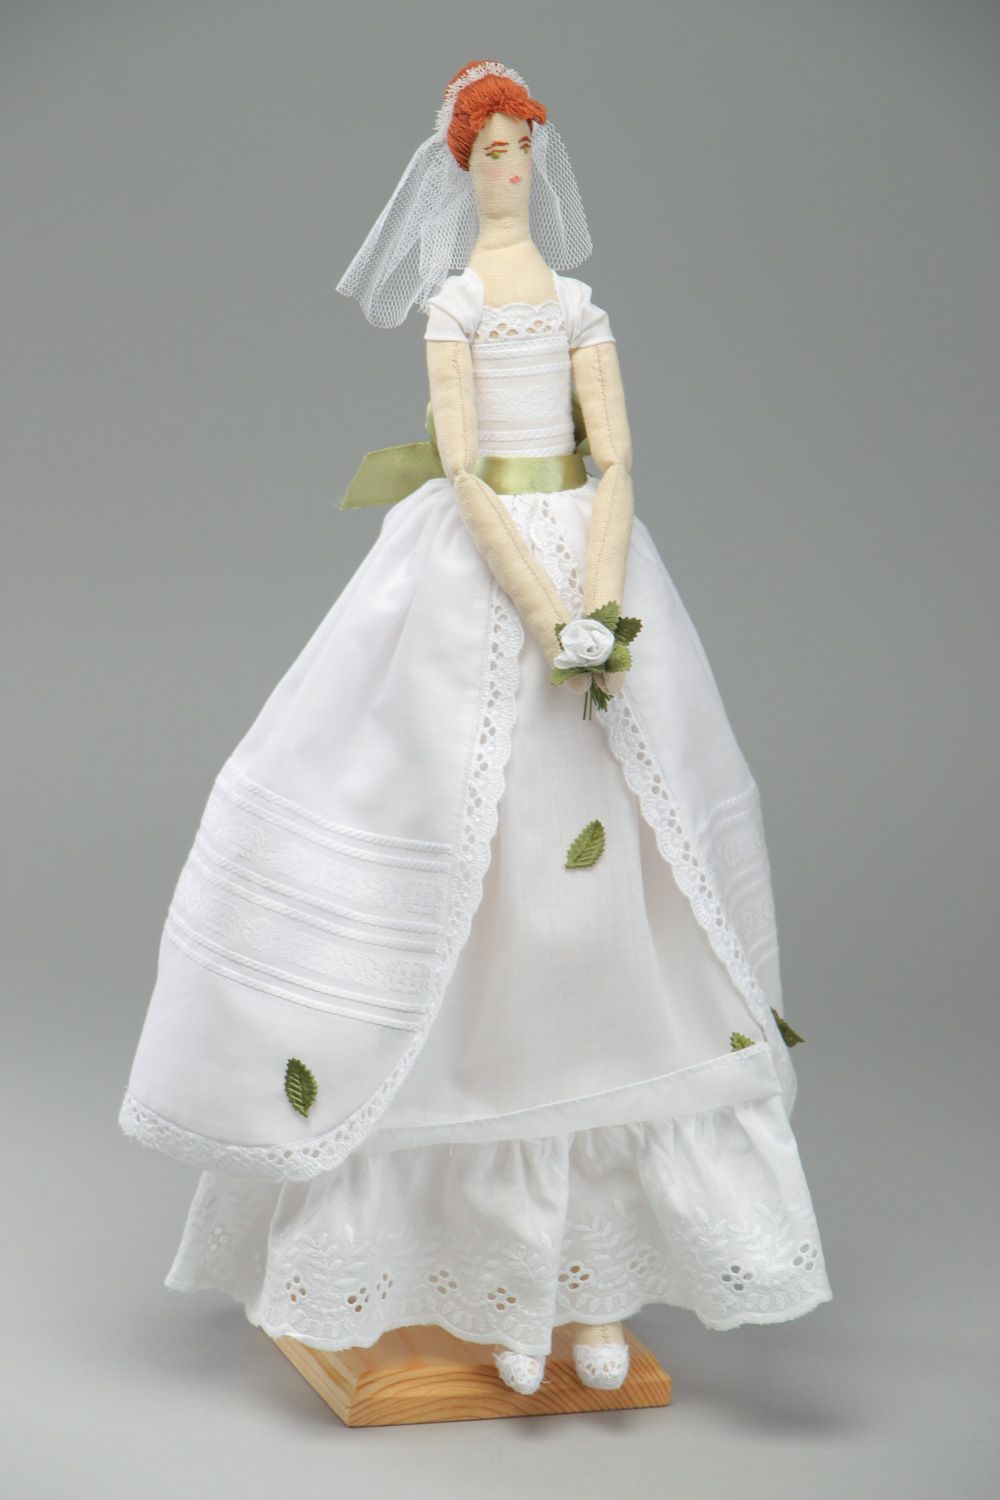 Grande poupée mariée en tissu faite main décorative originale cadeau de mariage photo 1